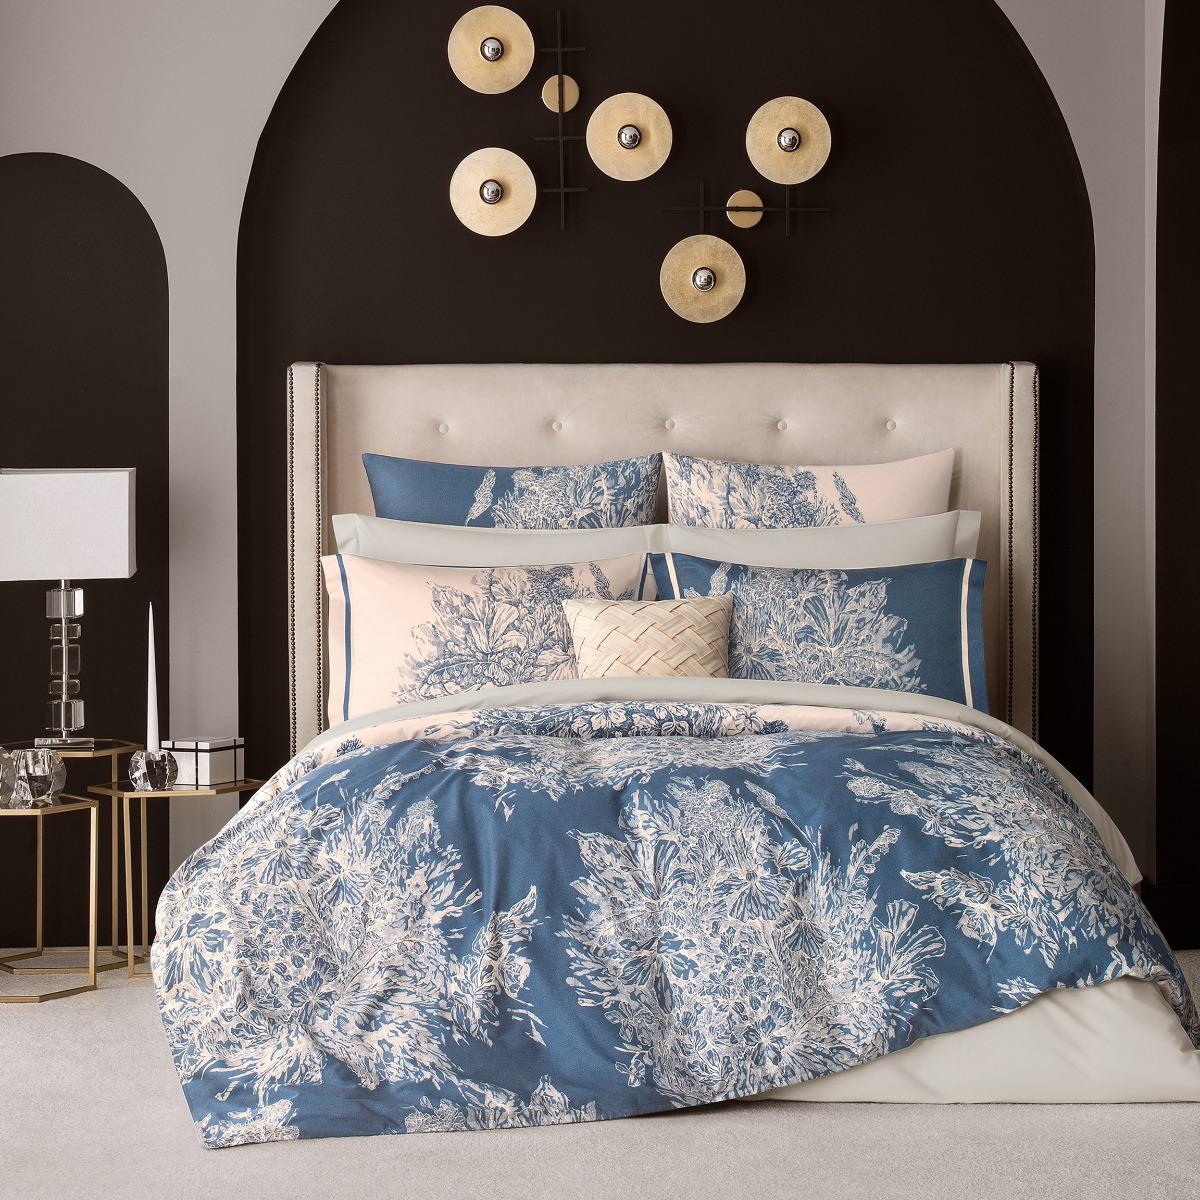 Комплект постельного белья Togas Фонтени бежевый с синим Кинг сайз, цвет синий, размер Кинг сайз - фото 1